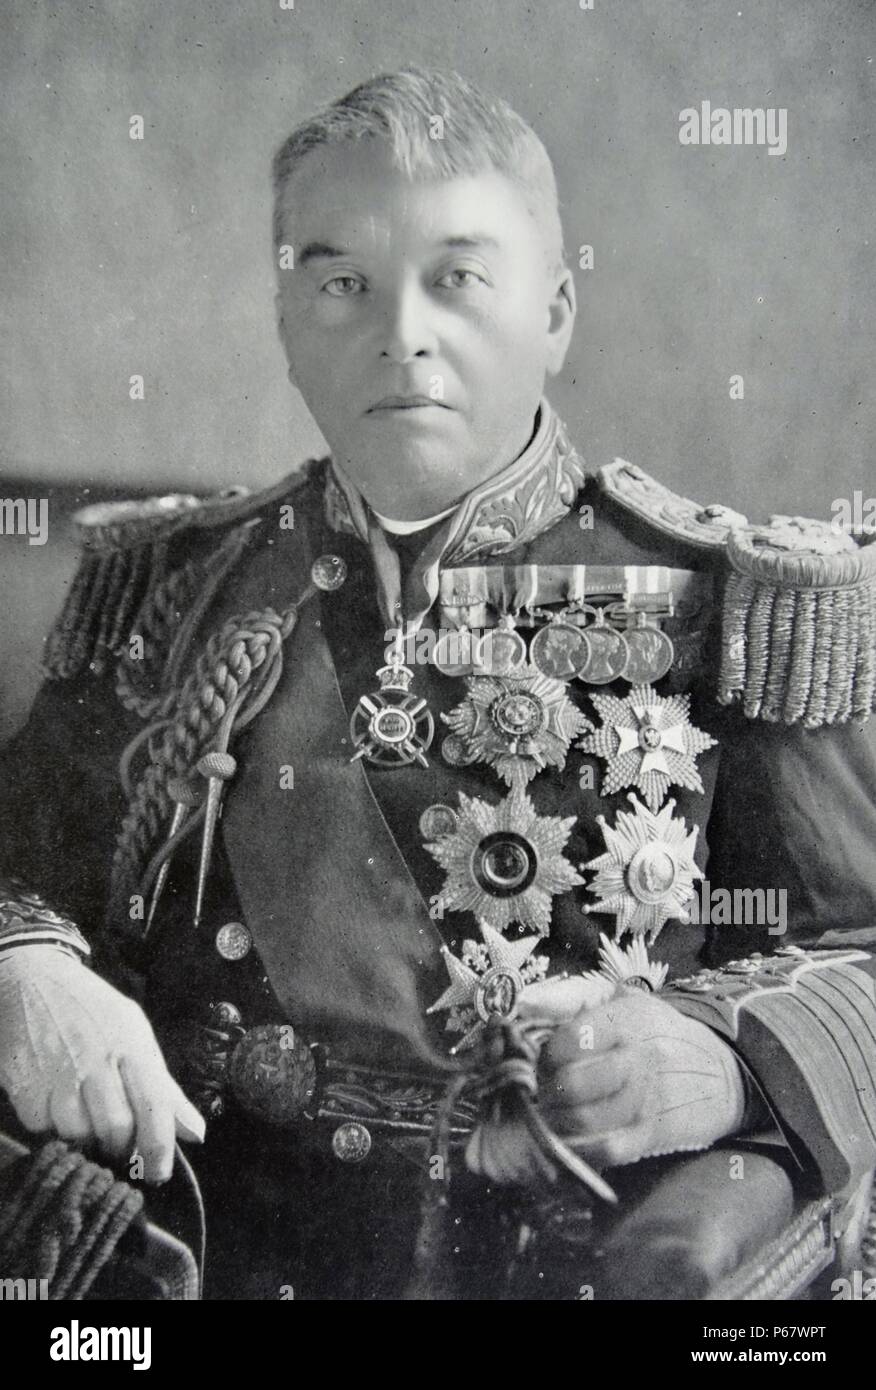 Admiral der Flotte John Fisher, 1st Baron Fisher (25. Januar 1841 - 10. Juli 1920) Der britische Admiral für seine Bemühungen in der Reform bekannt. Stockfoto